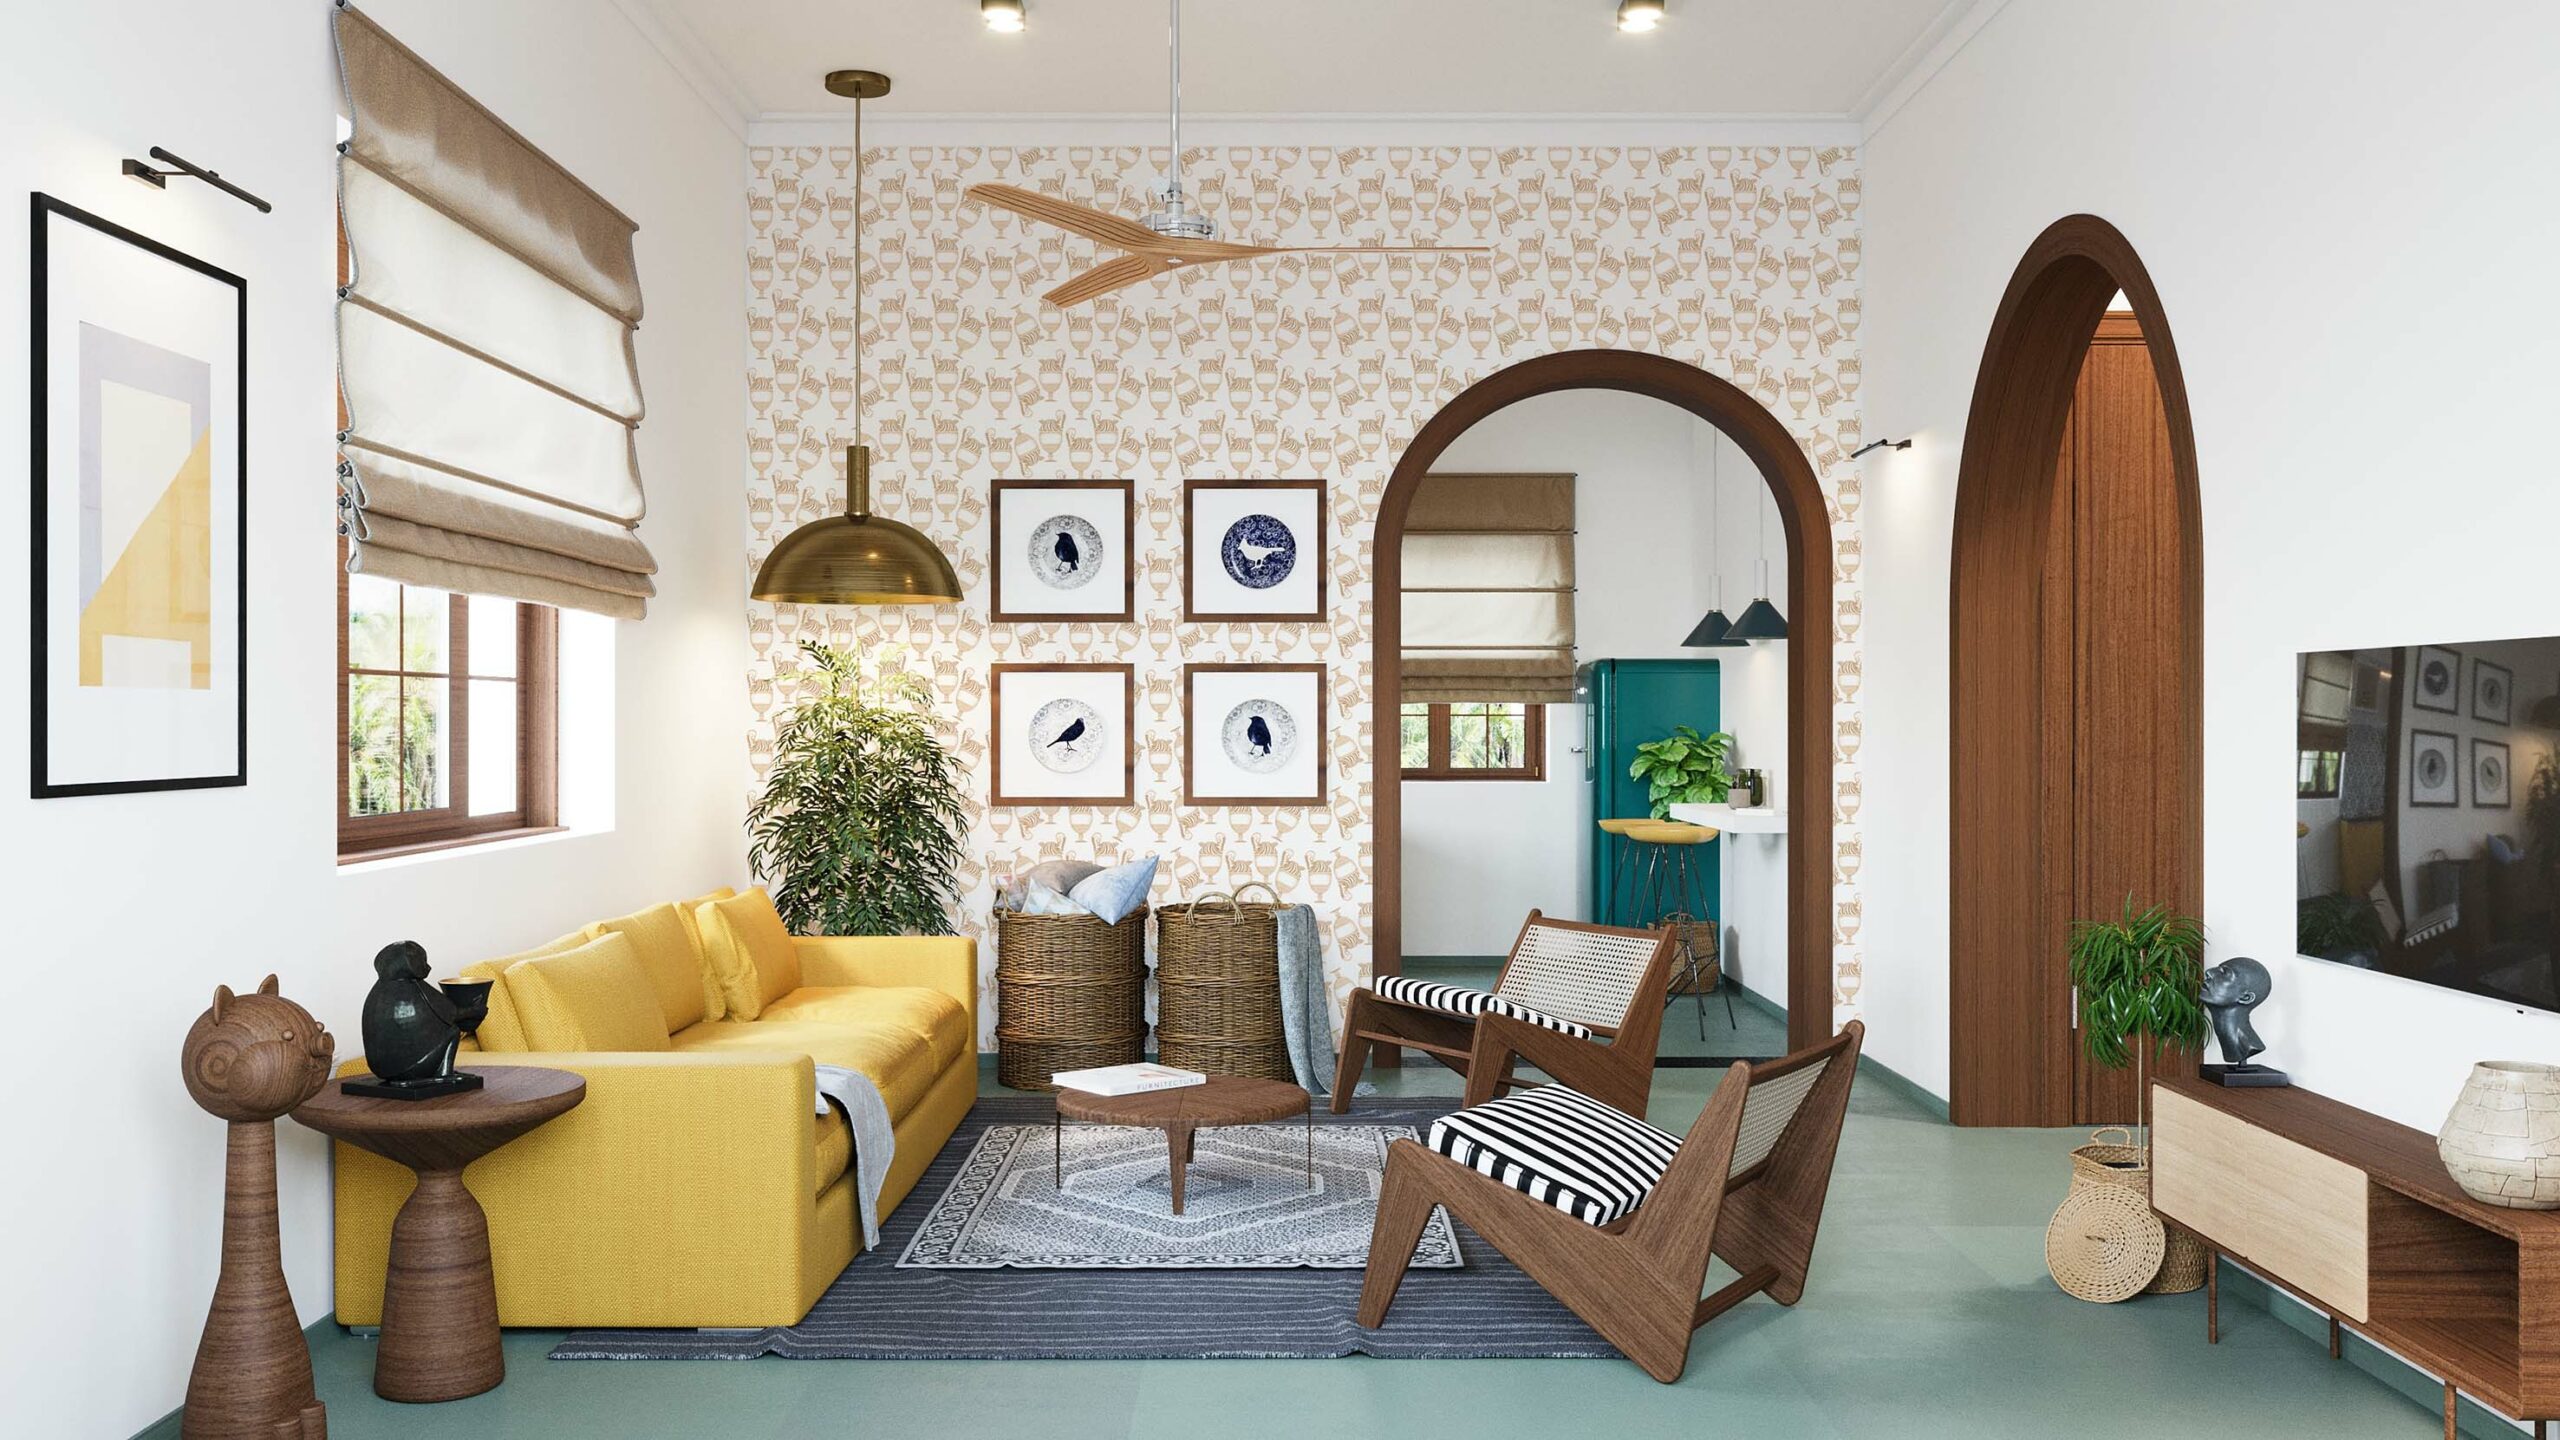 Fontana-White-Hazel-Wallpaper-MaVoix-full-interior-design-living-room-overall.jpg